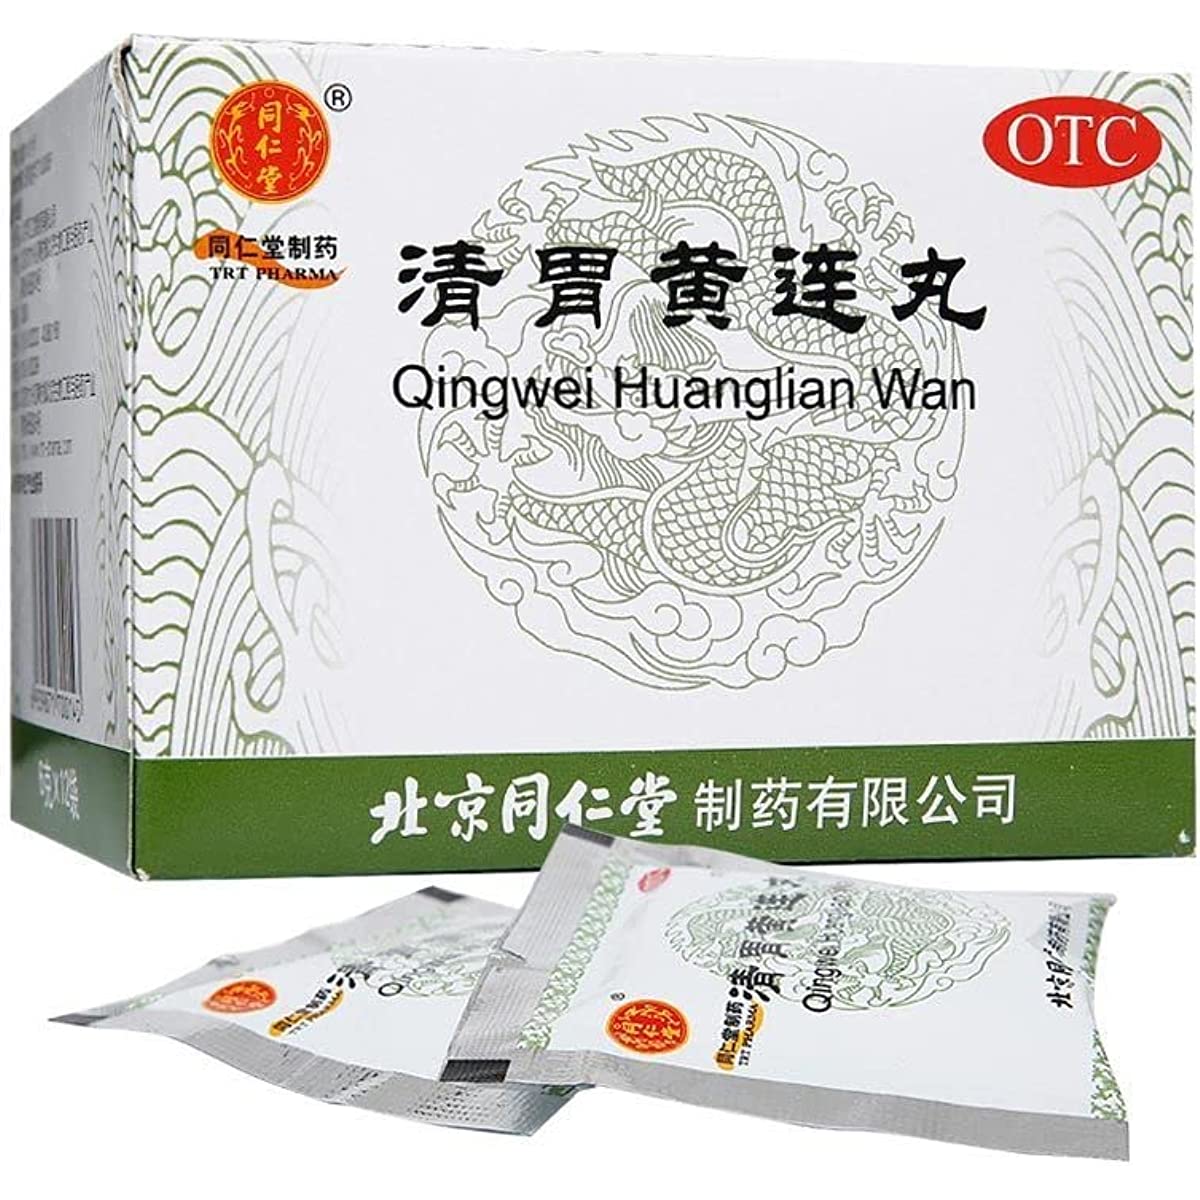 1 Box, TongrentangQingwei Huanglian Wan 6g*12 Bags / Box 清胃黄连丸